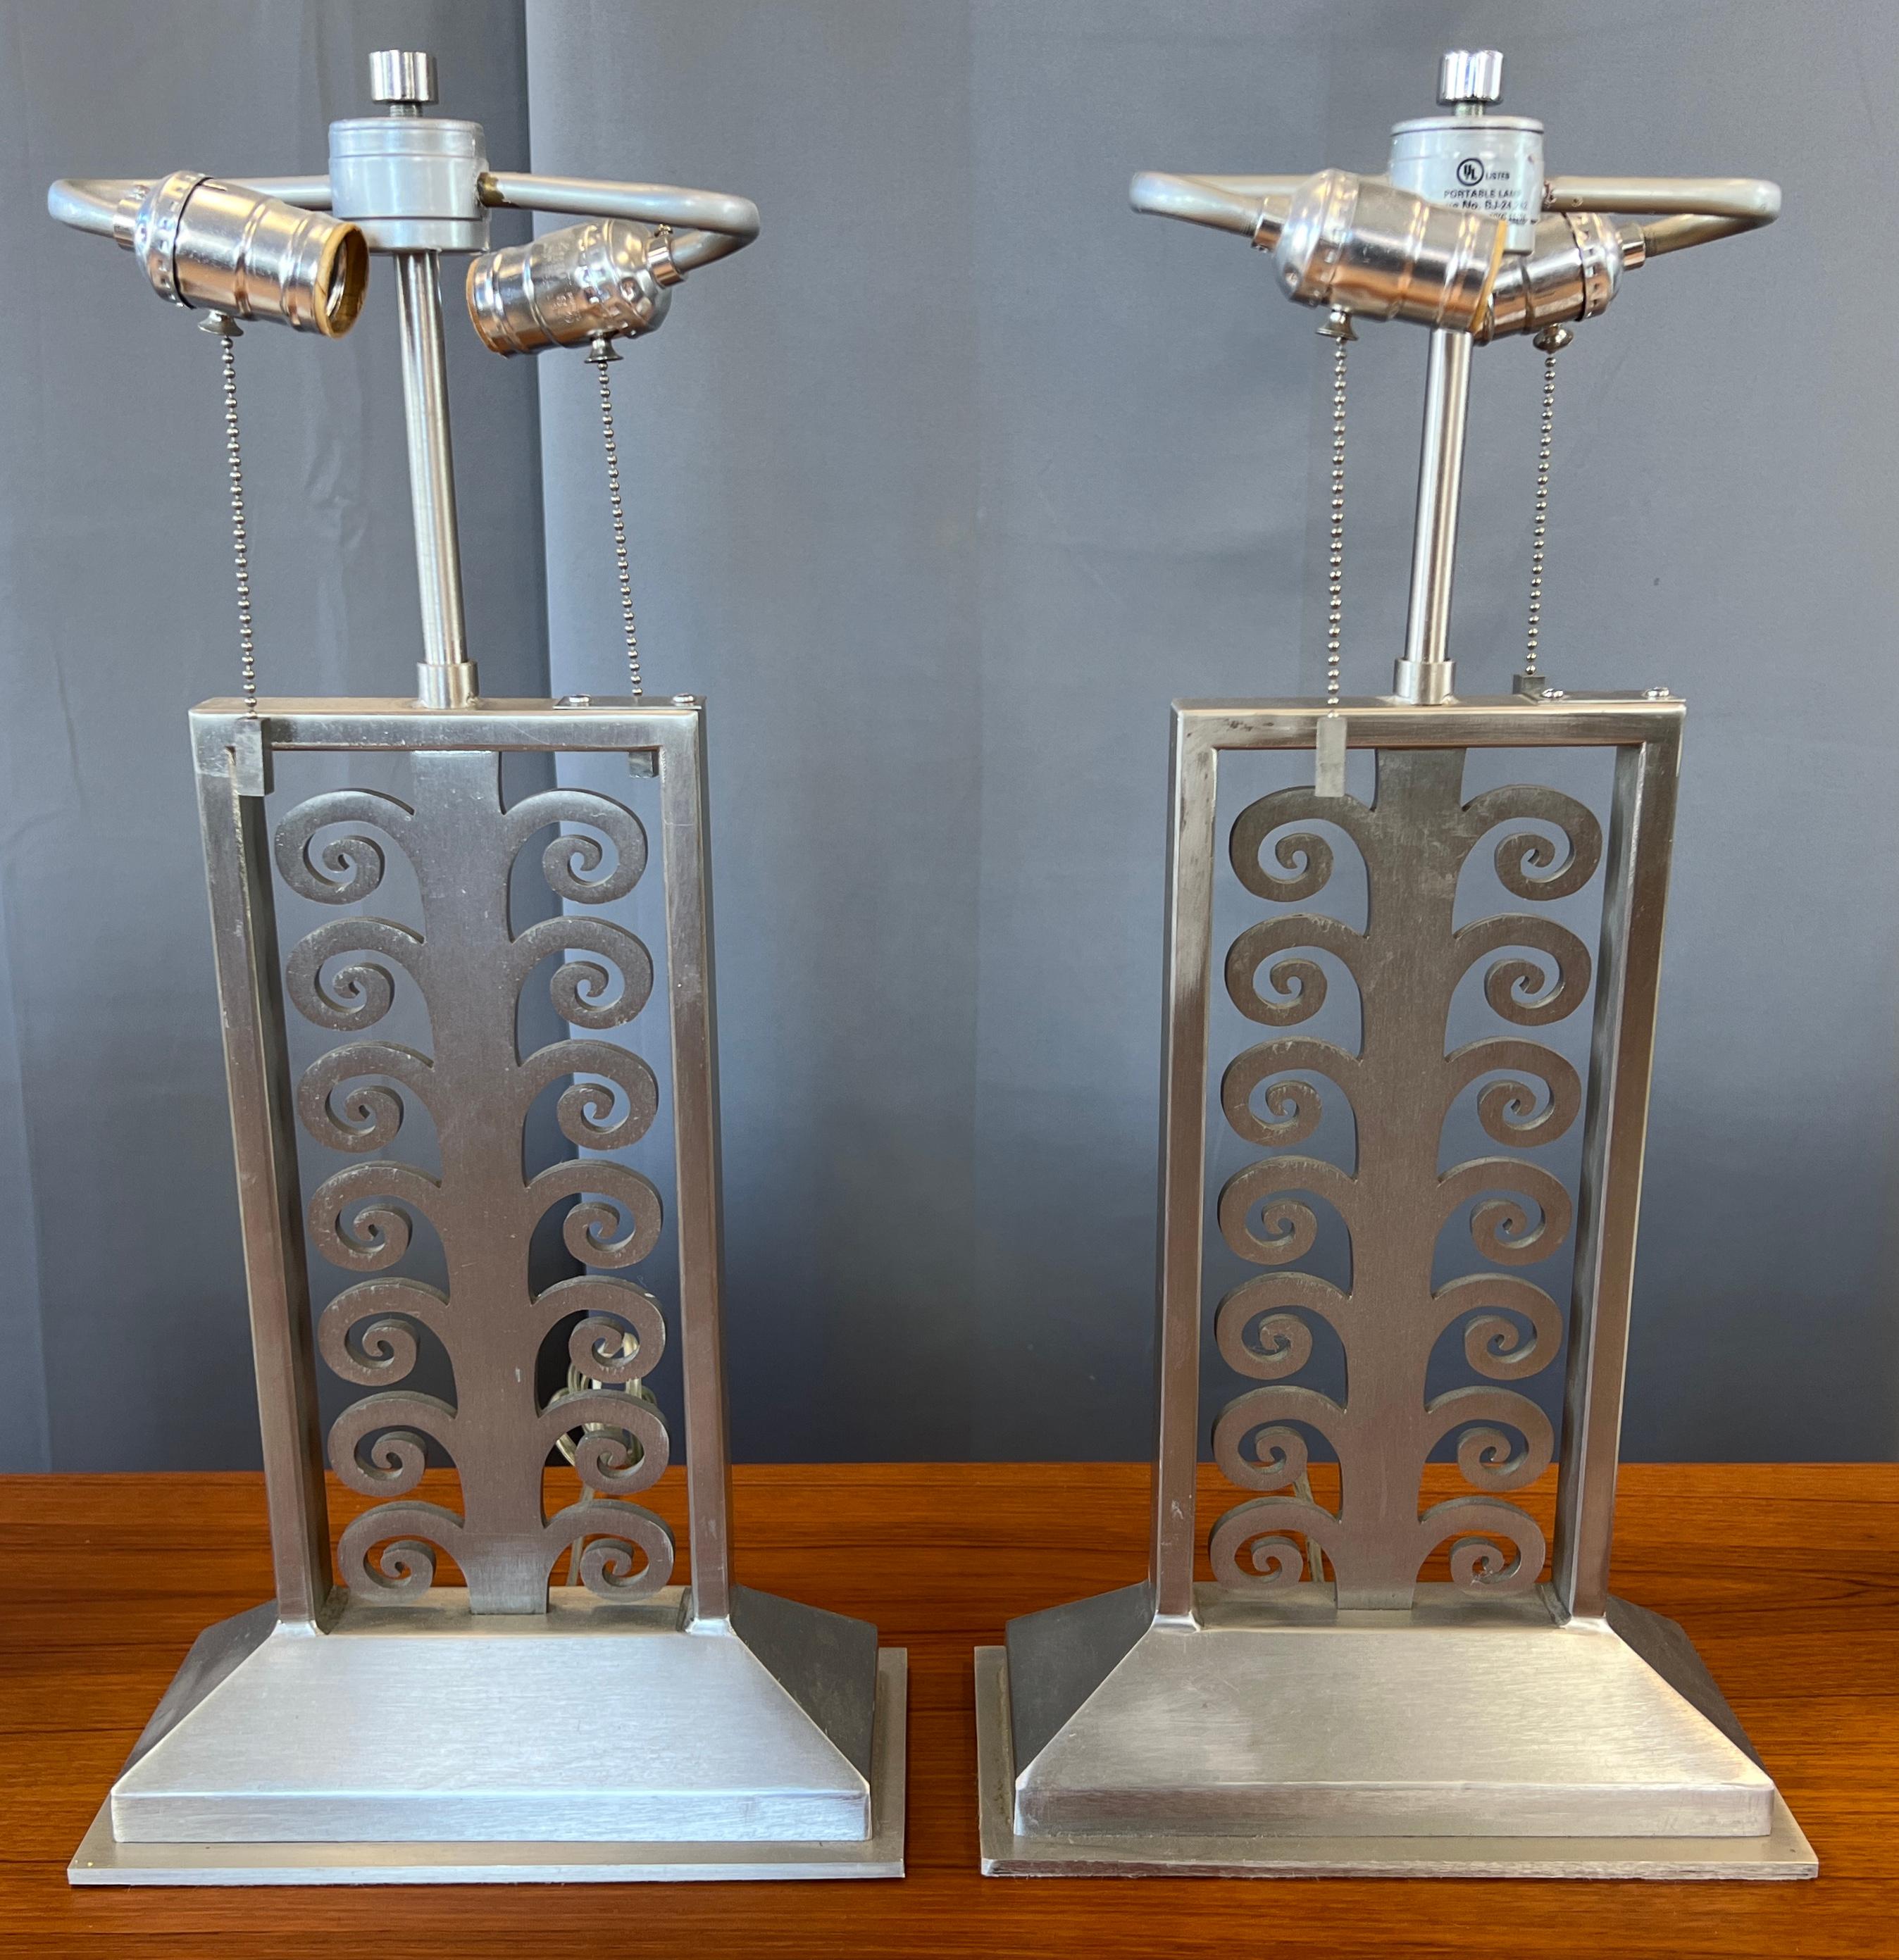 Fin du 20e siècle Paire de lampes de bureau Sirmos en acier inoxydable brossé